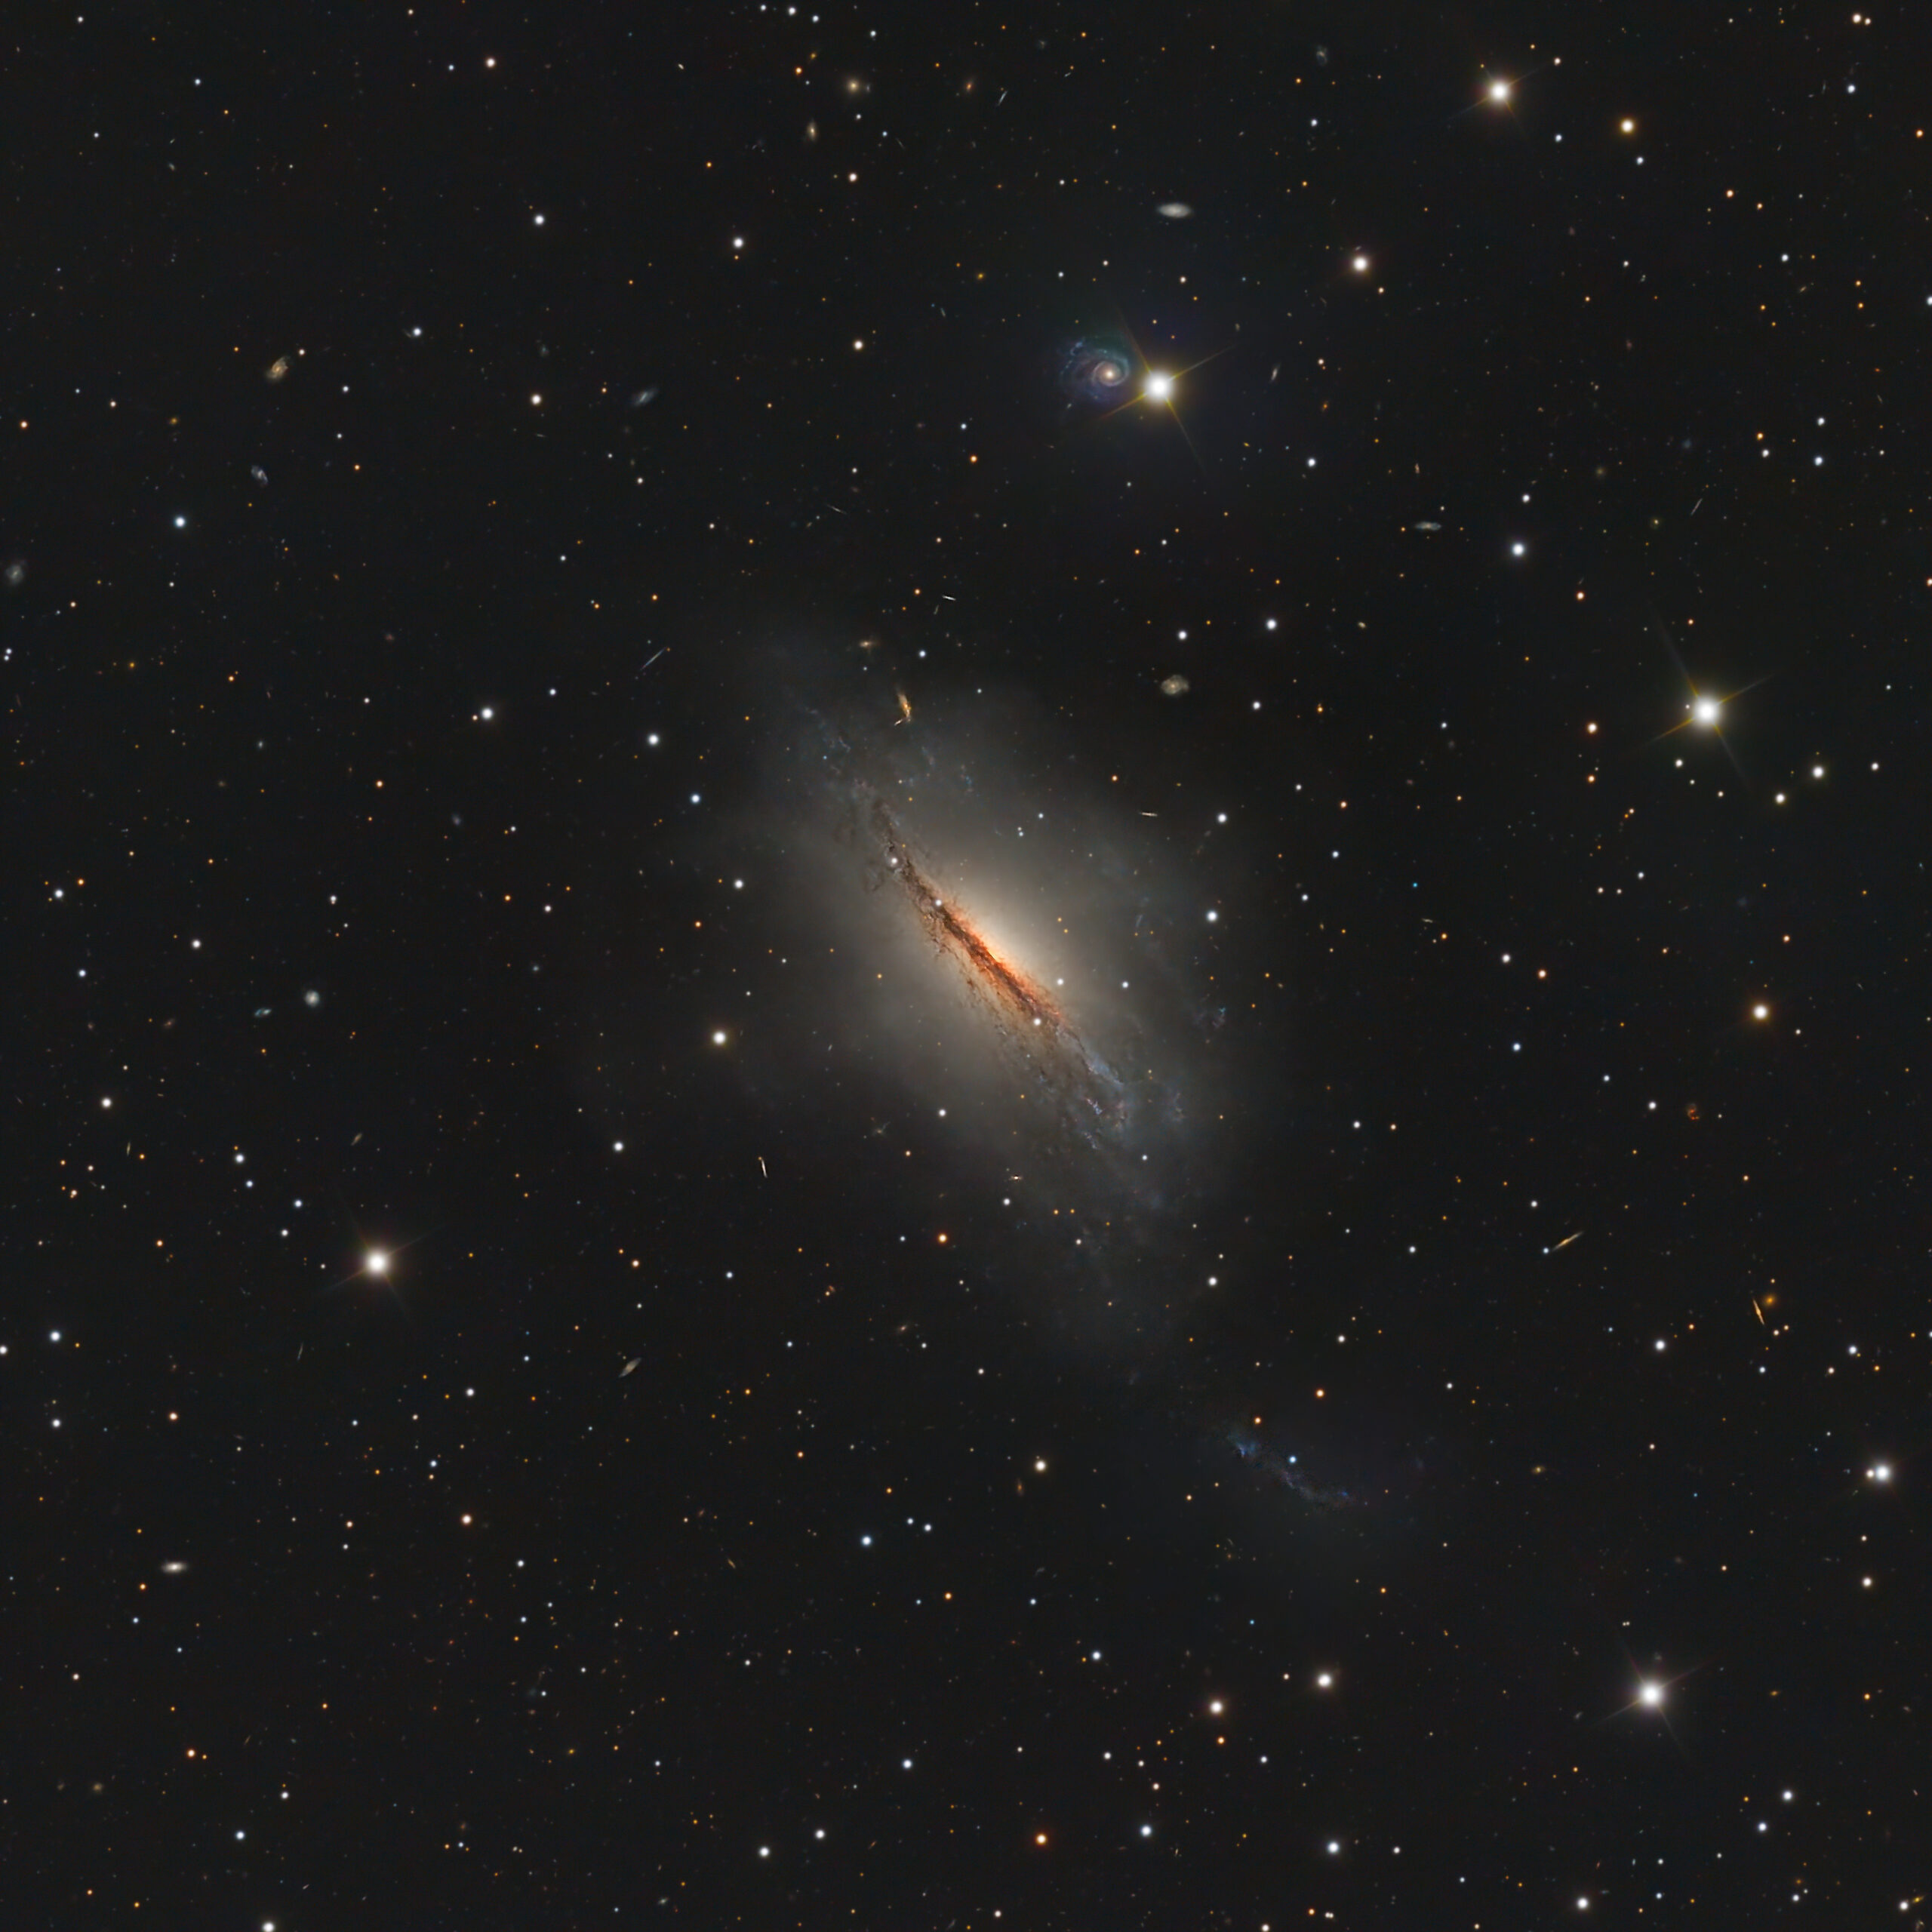 NGC 2076